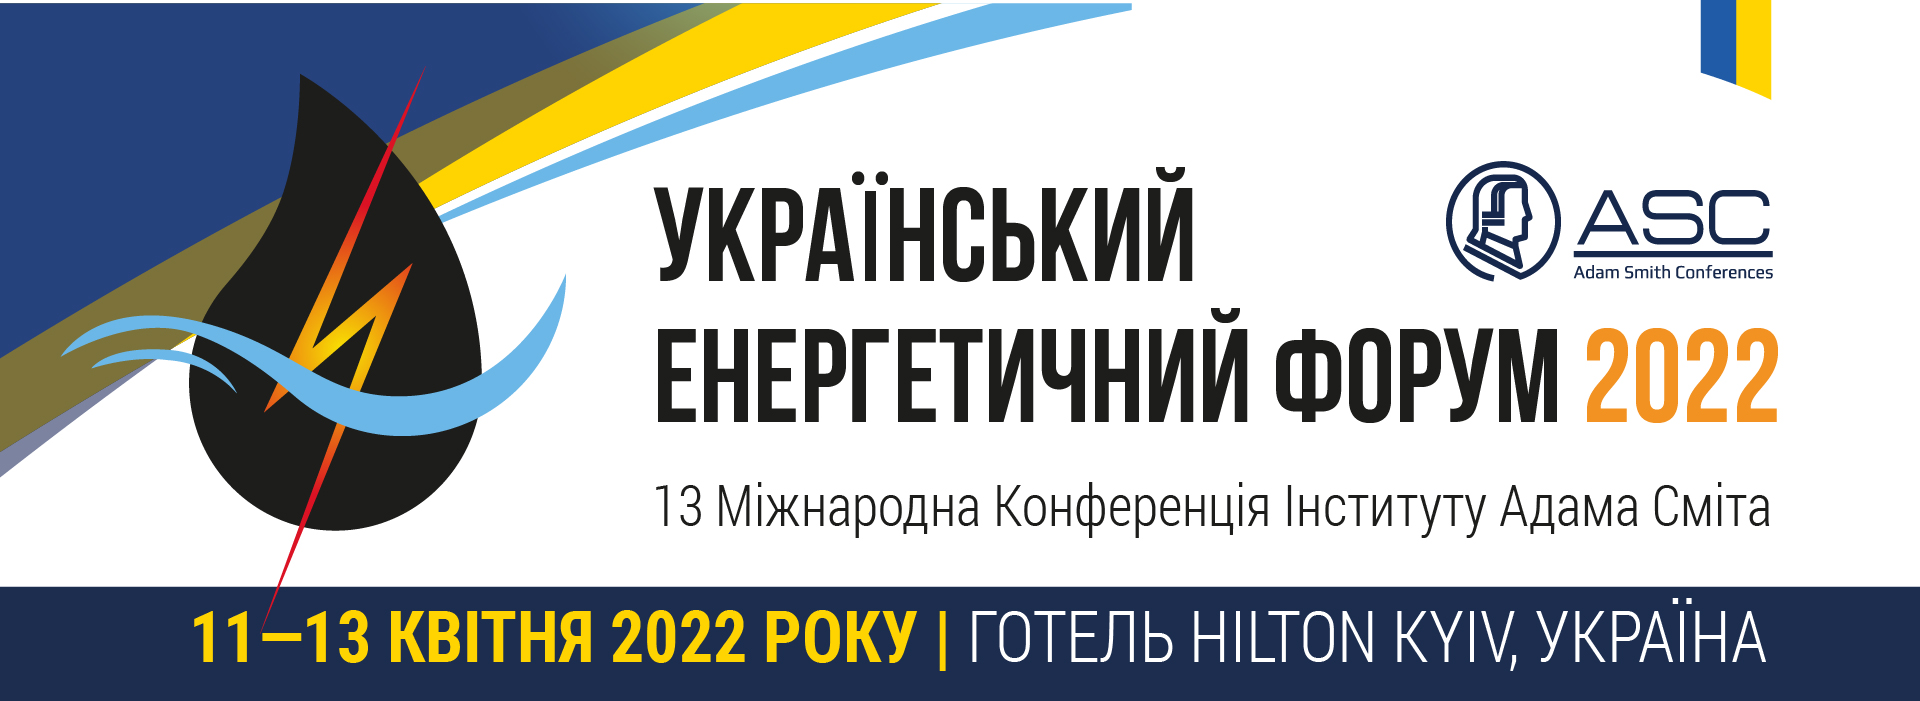 Український енергетичний форум 2022